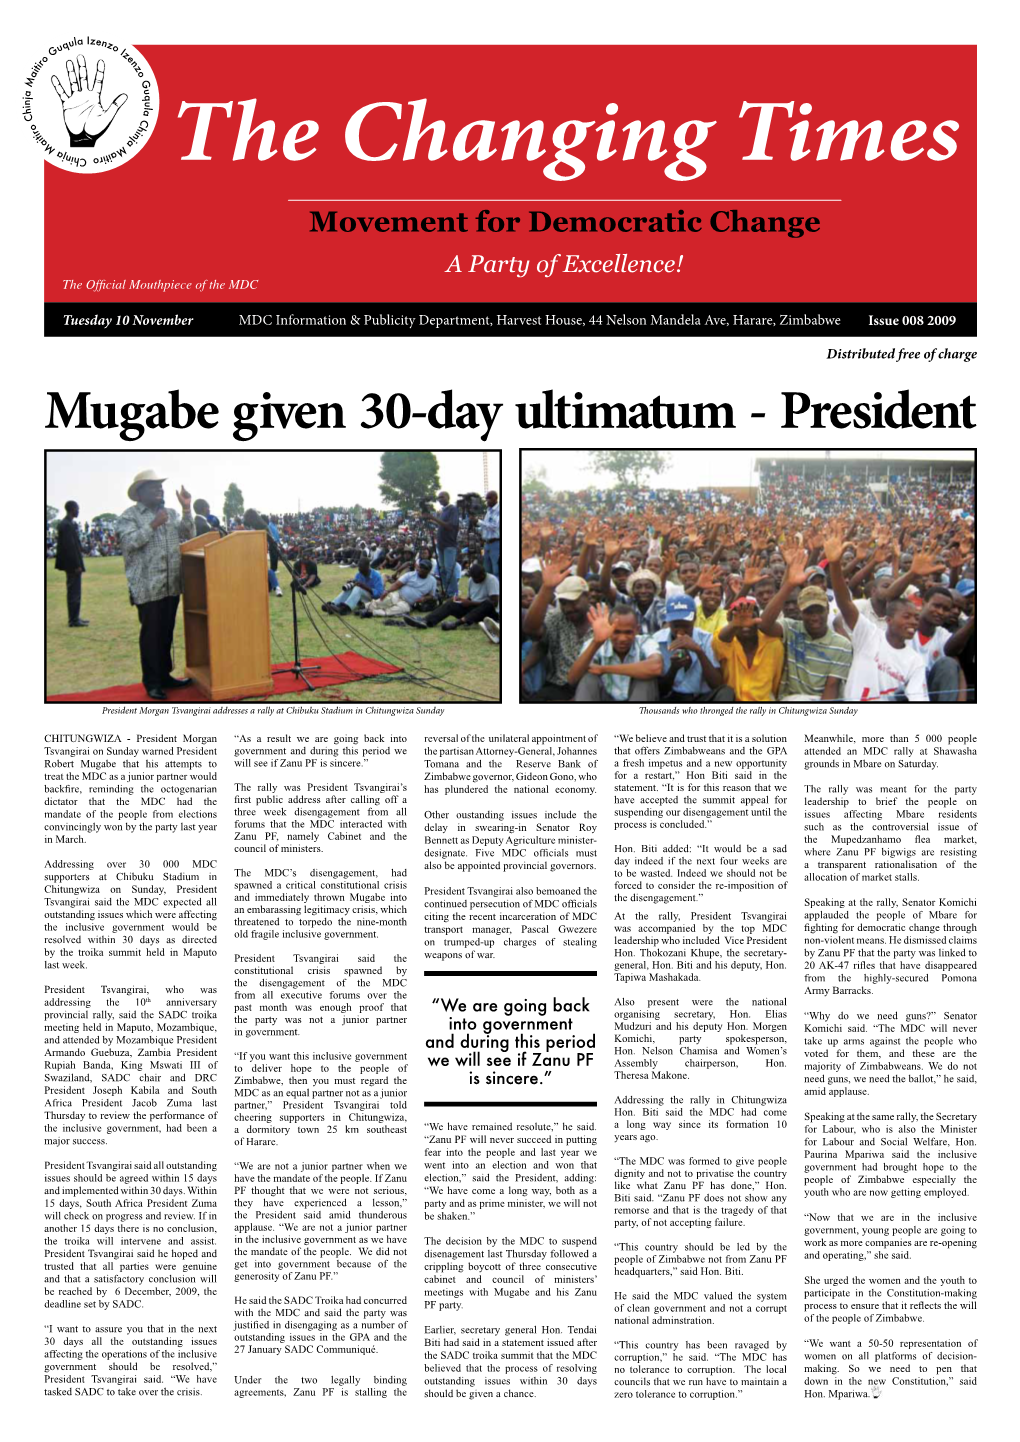 Mugabe Given 30-Day Ultimatum - President